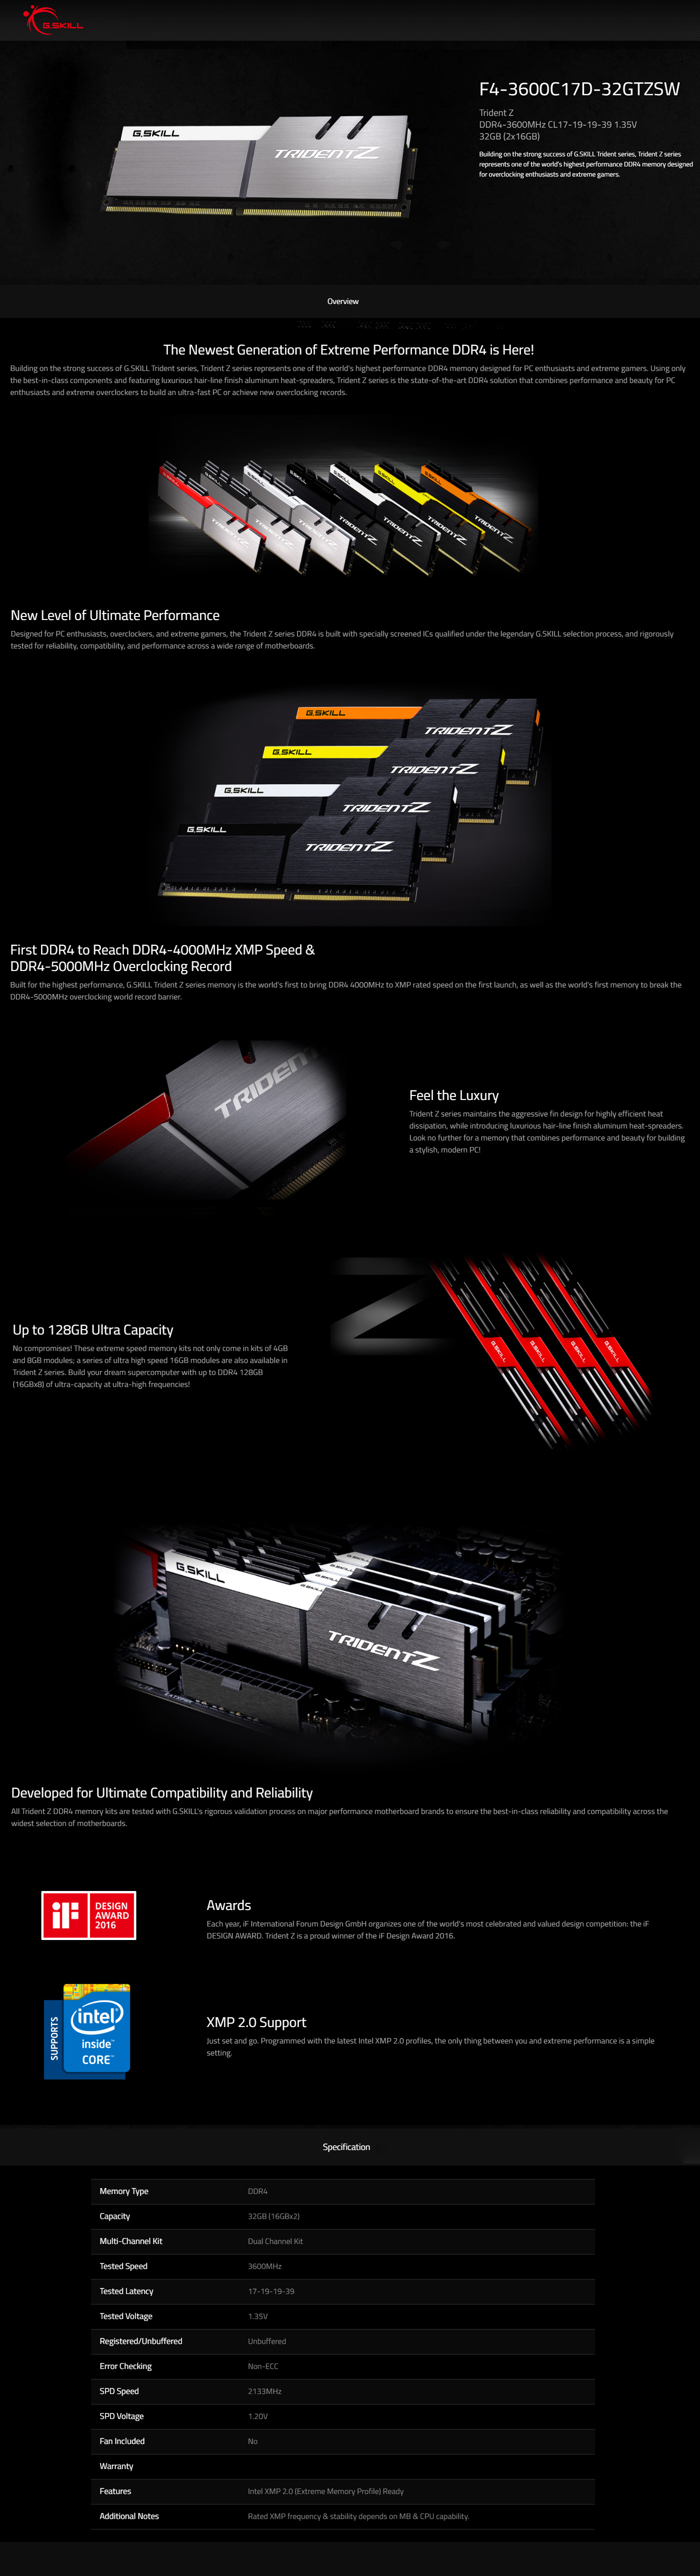 Buy Online G.skill Trident Z 32GB (2 x 16GB) DDR4 3600MHz Desktop RAM (F4-3600C17D-32GTZSW)